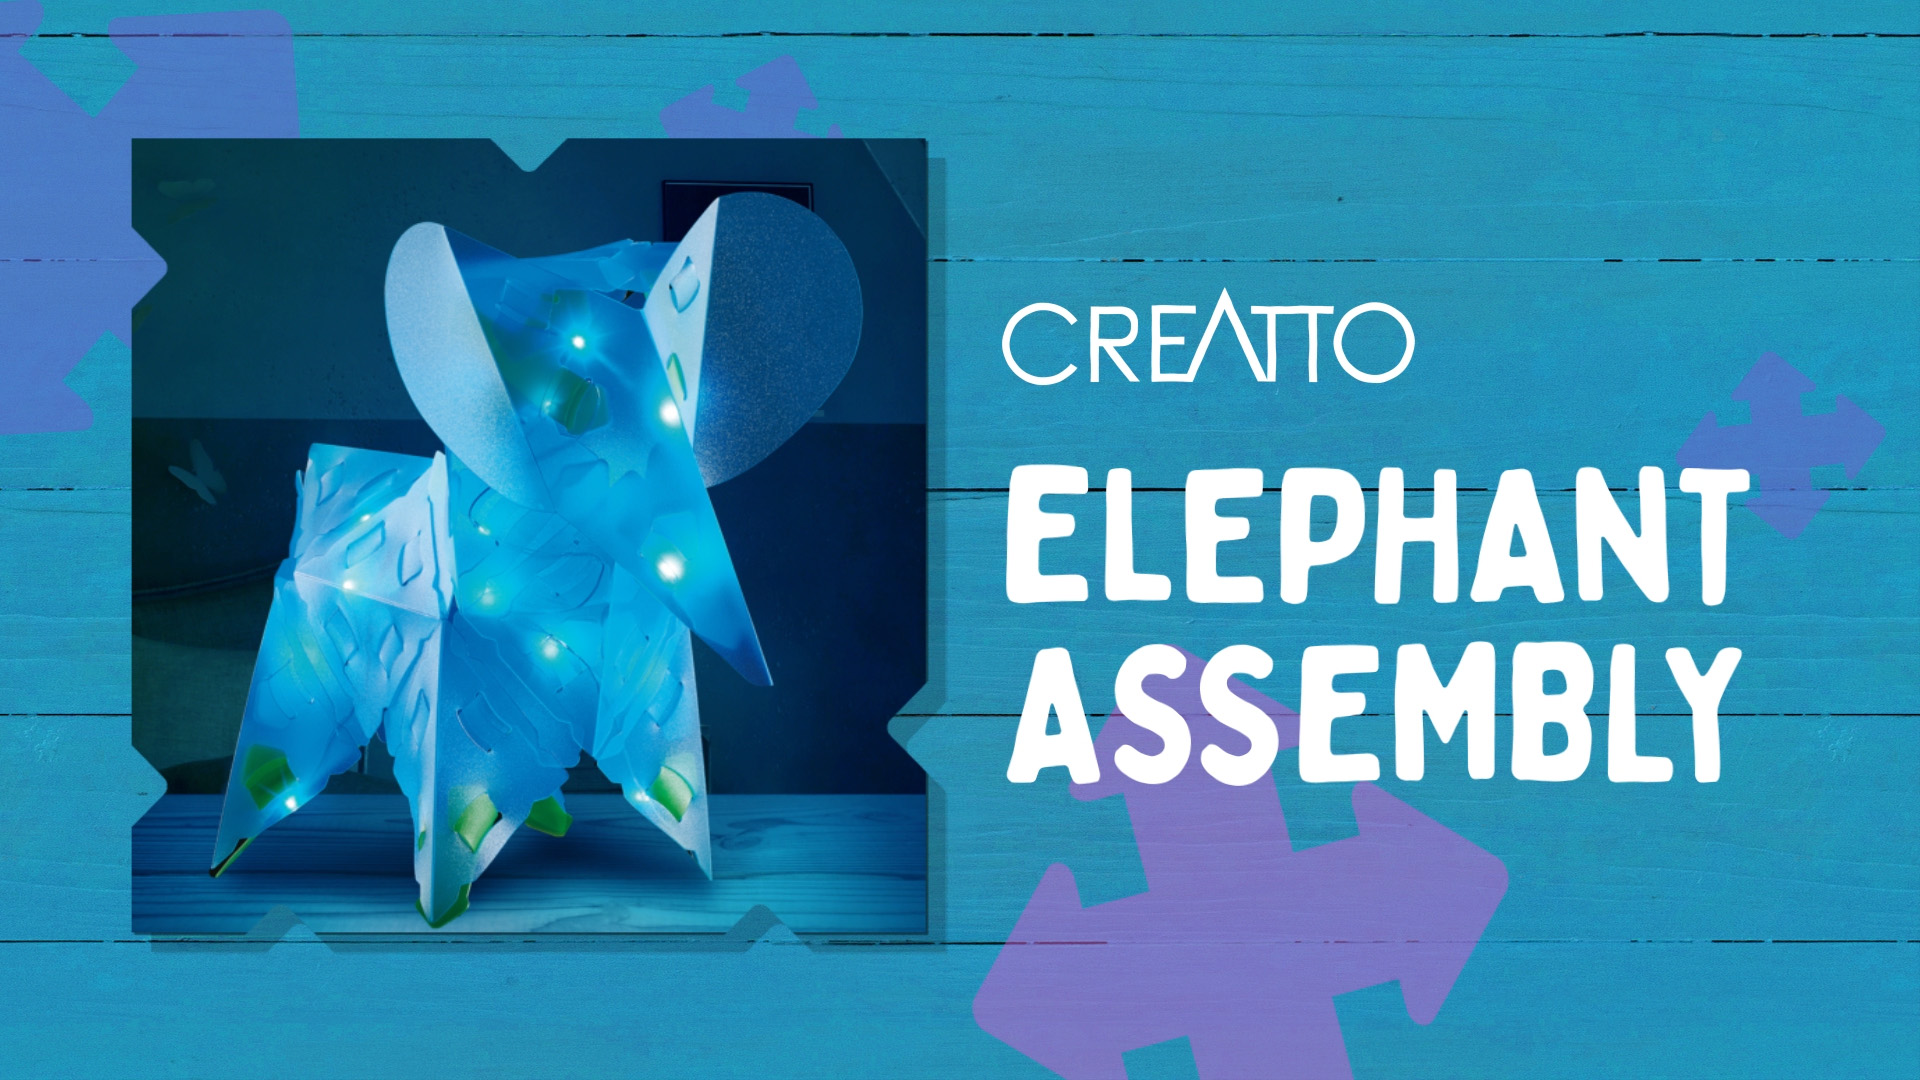 Creatto_-_Elephant_Assembly.jpg